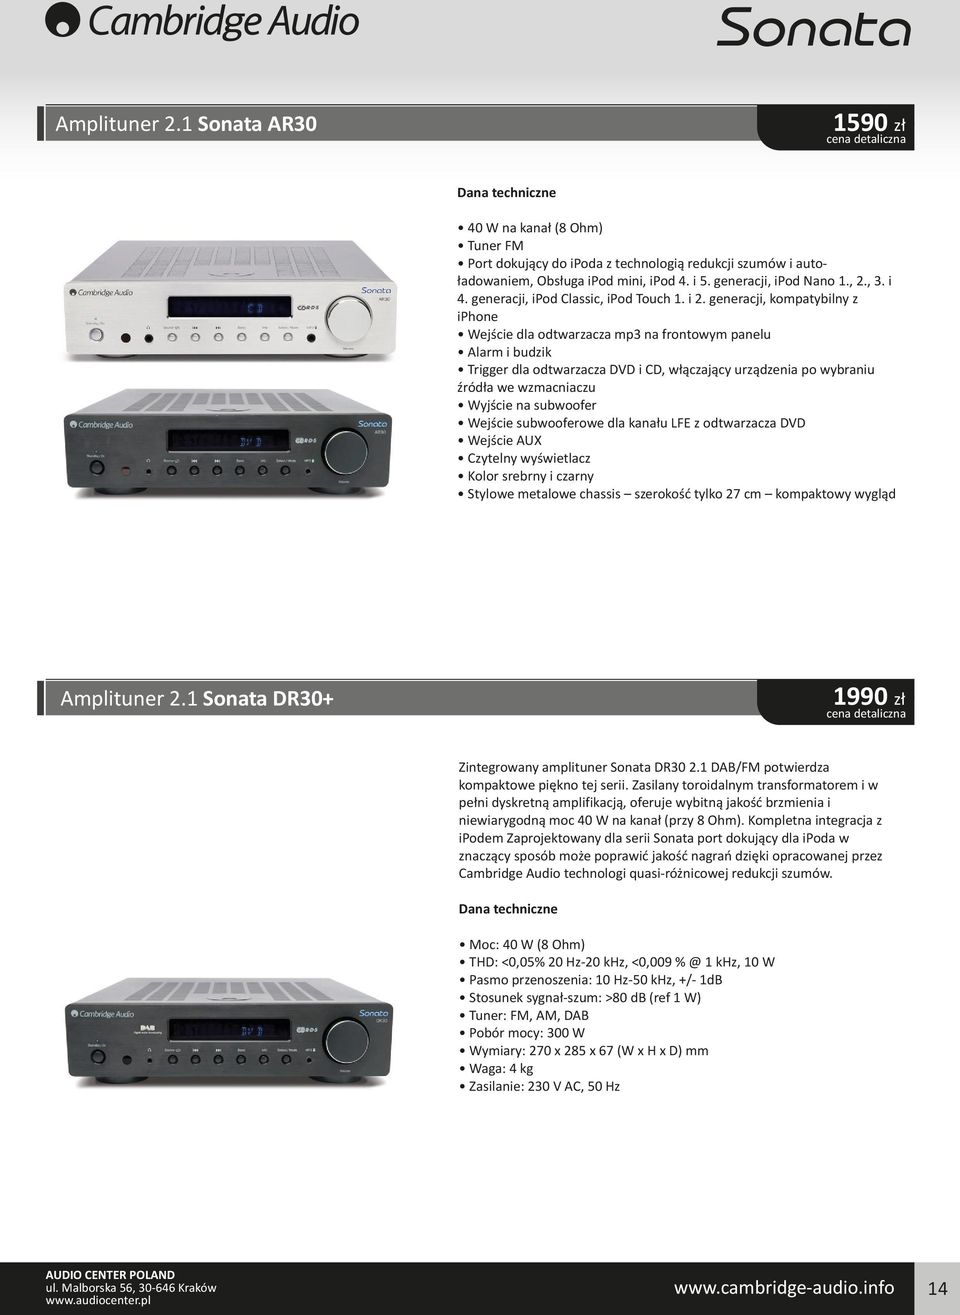 generacji, kompatybilny z iphone Wejście dla odtwarzacza mp3 na frontowym panelu Alarm i budzik Trigger dla odtwarzacza DVD i CD, włączający urządzenia po wybraniu źródła we wzmacniaczu Wyjście na